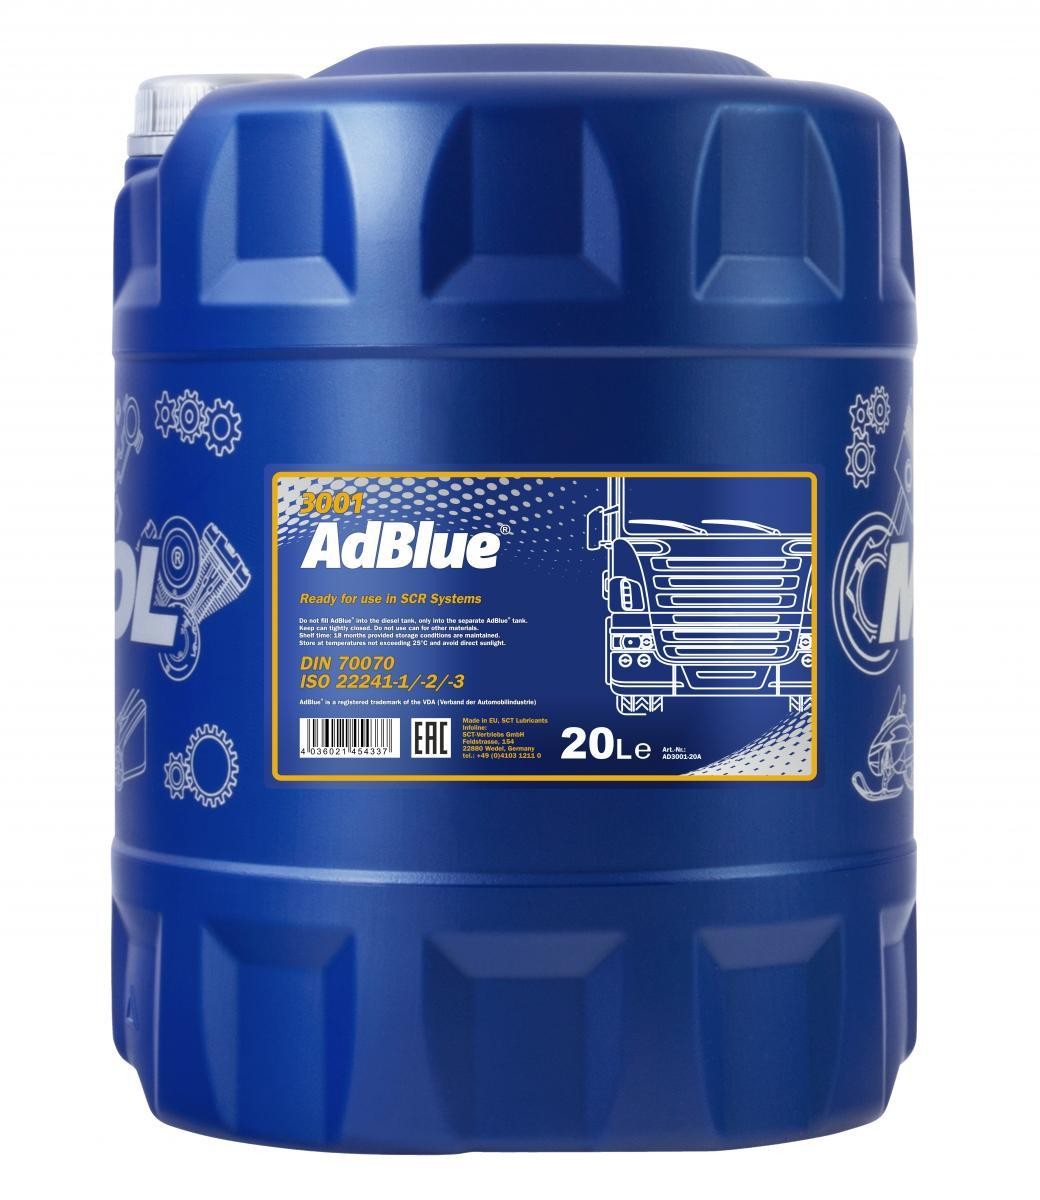 171335 FEBI BILSTEIN AdBlue Inhalt: 5l ▷ AUTODOC Preis und Erfahrung